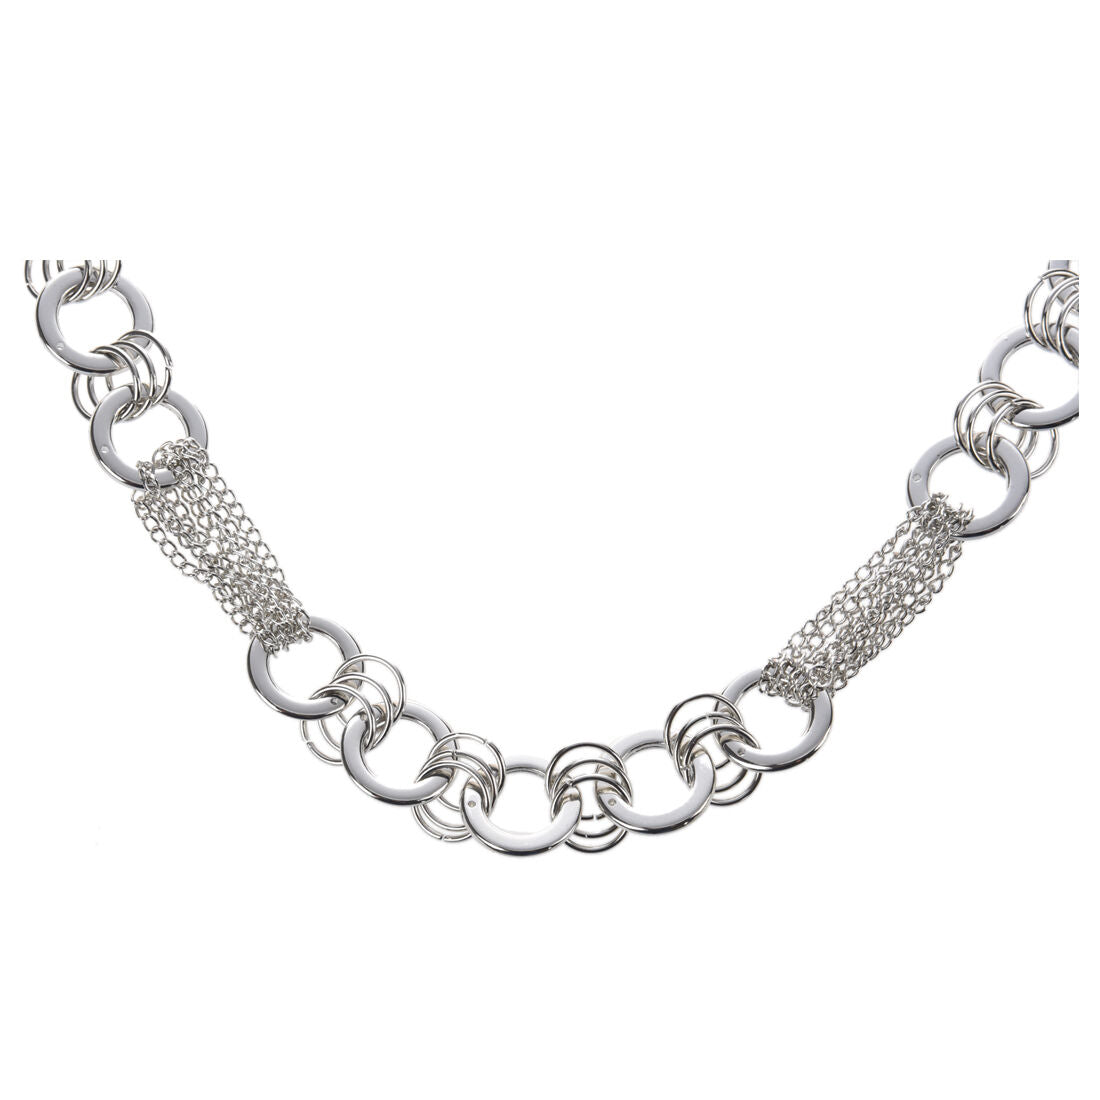 Fashion Jewelry Belt || Circle Links